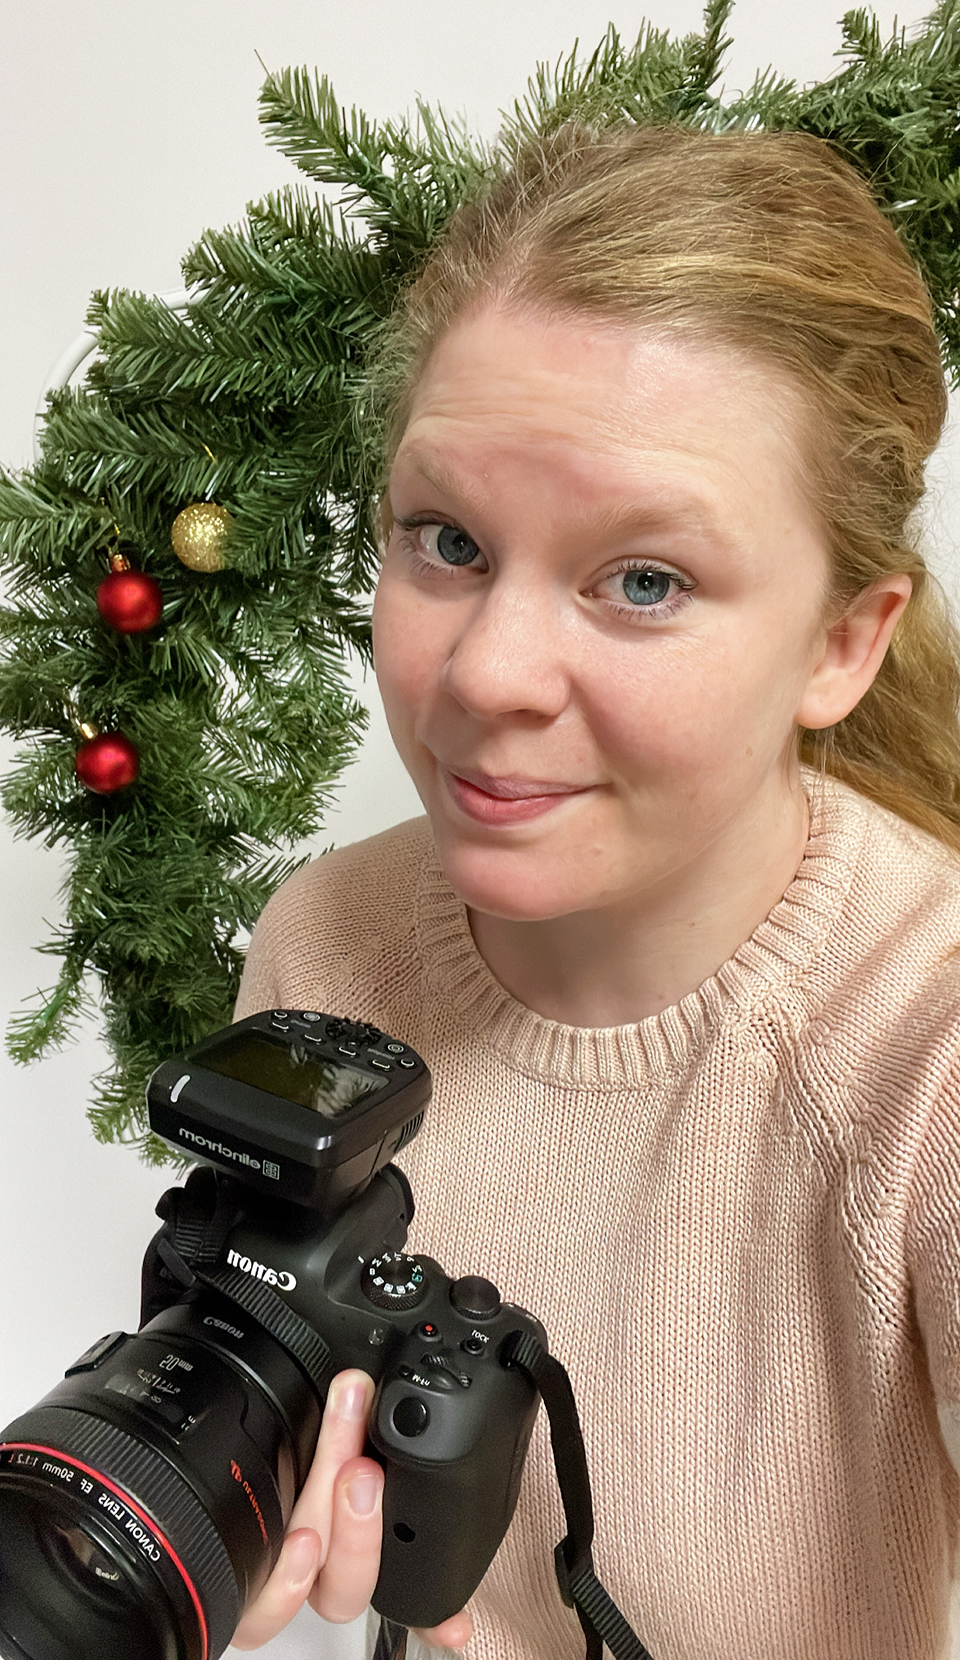 barnfotografering göteborg alingsås minisessions julfotografering